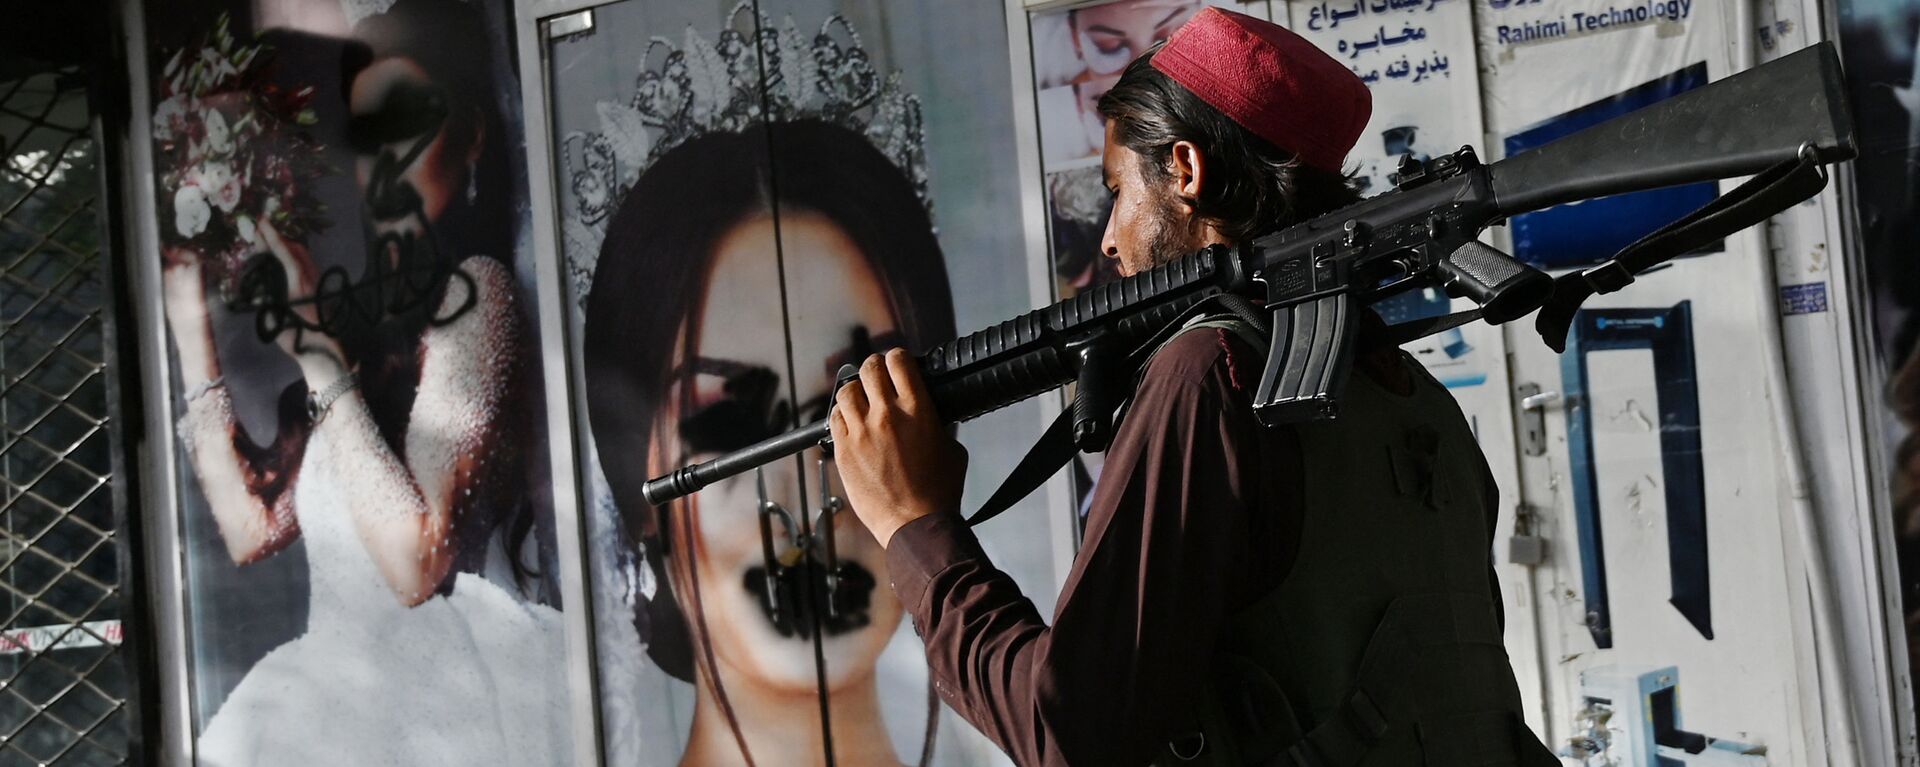 Боевик Талибана* у салона красоты с изображениями женщин, испачканных аэрозольной краской, в Шахр-э Нау в Кабуле - Sputnik Узбекистан, 1920, 26.08.2021